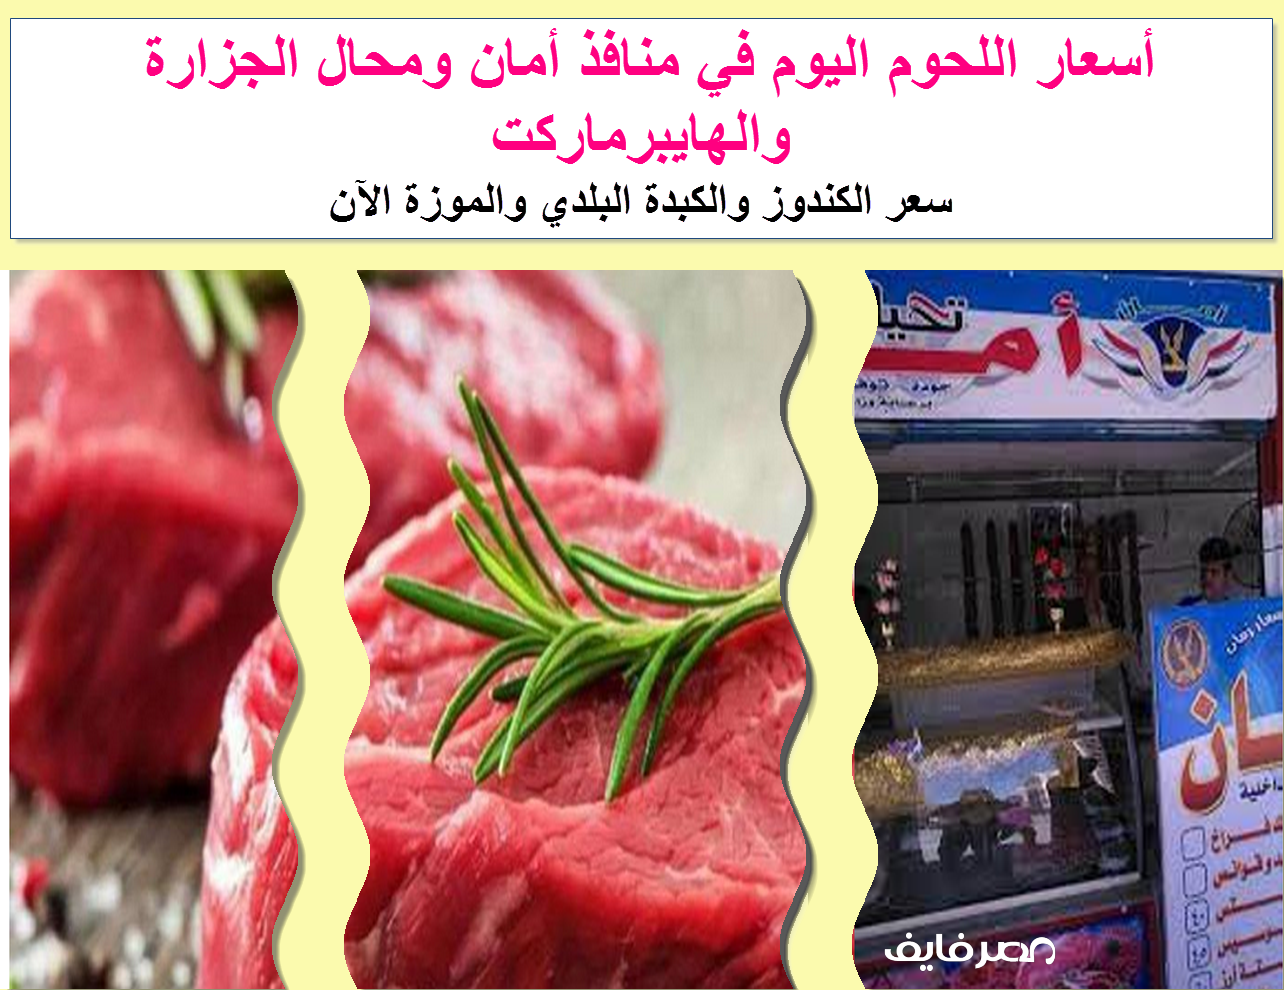 قبل ما تشتري أعرف أسعار اللحوم في منافذ أمان 2021 والبلدي والسوداني في محلات الجزارة والهايبرماركت